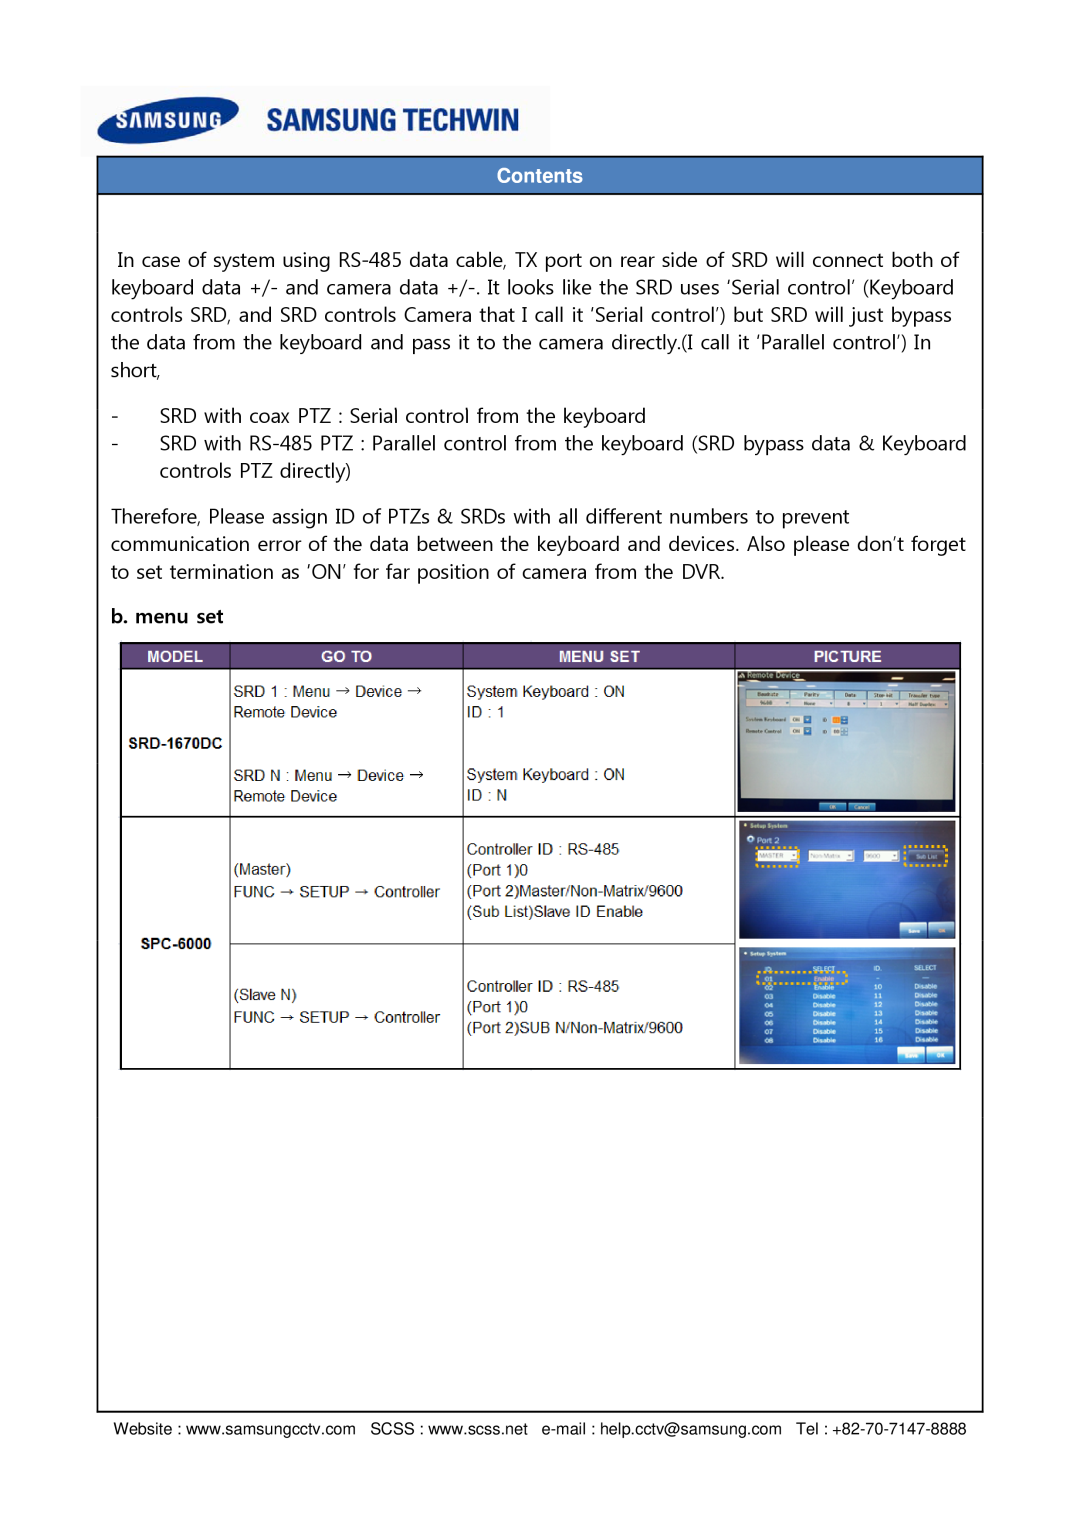 Samsung SPC-6000 setup guide b. menu set, Contents 